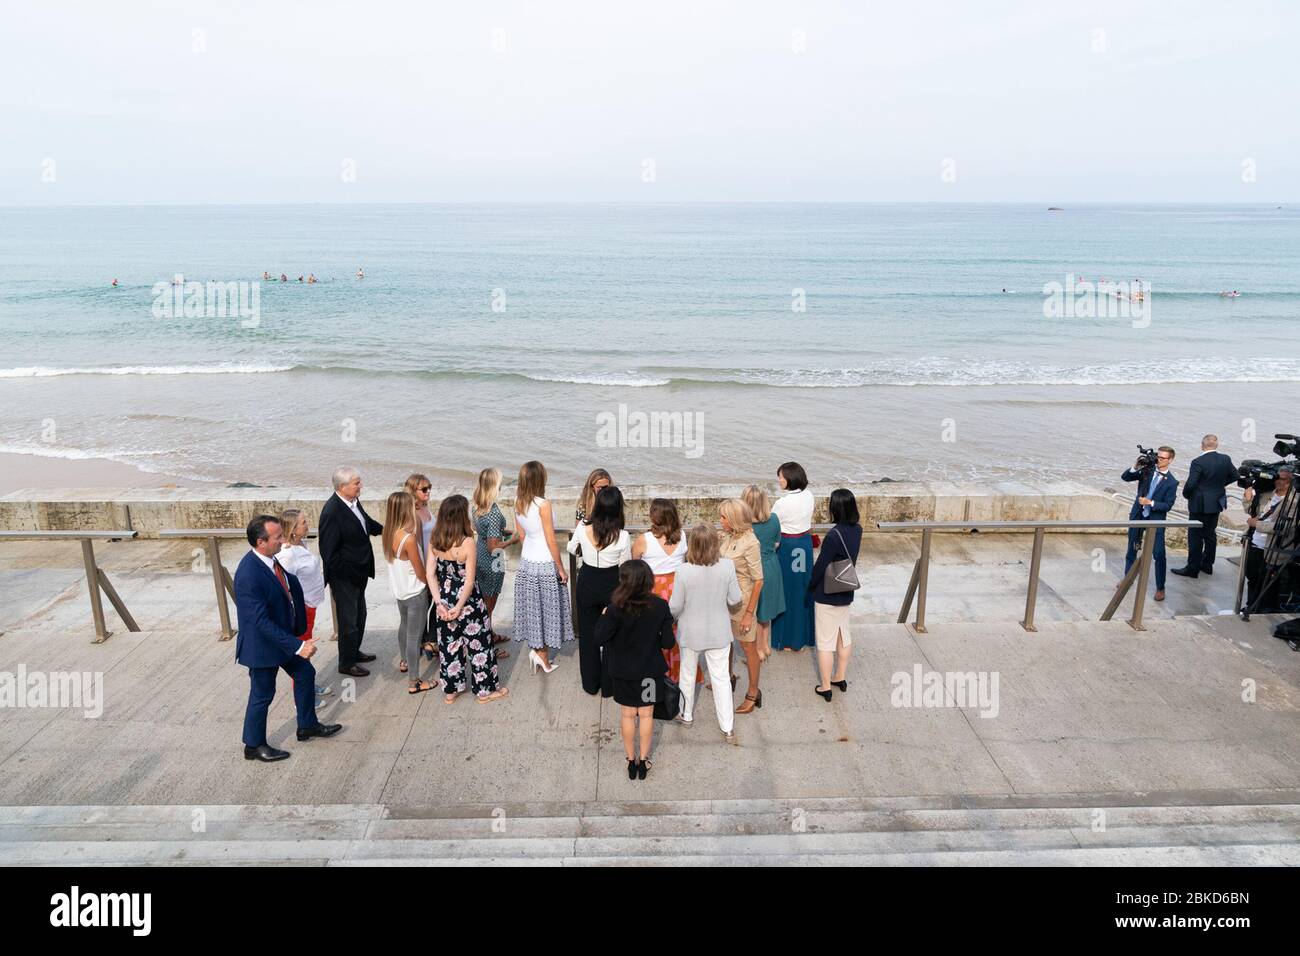 First Lady Melania Trump observe une manifestation de surf avec les conjoints des dirigeants du G-7 et les athlètes et musiciens locaux lundi 26 août 2019, à la plage des Côtes des Basques de Biarritz, France. #G7Biarritz Banque D'Images